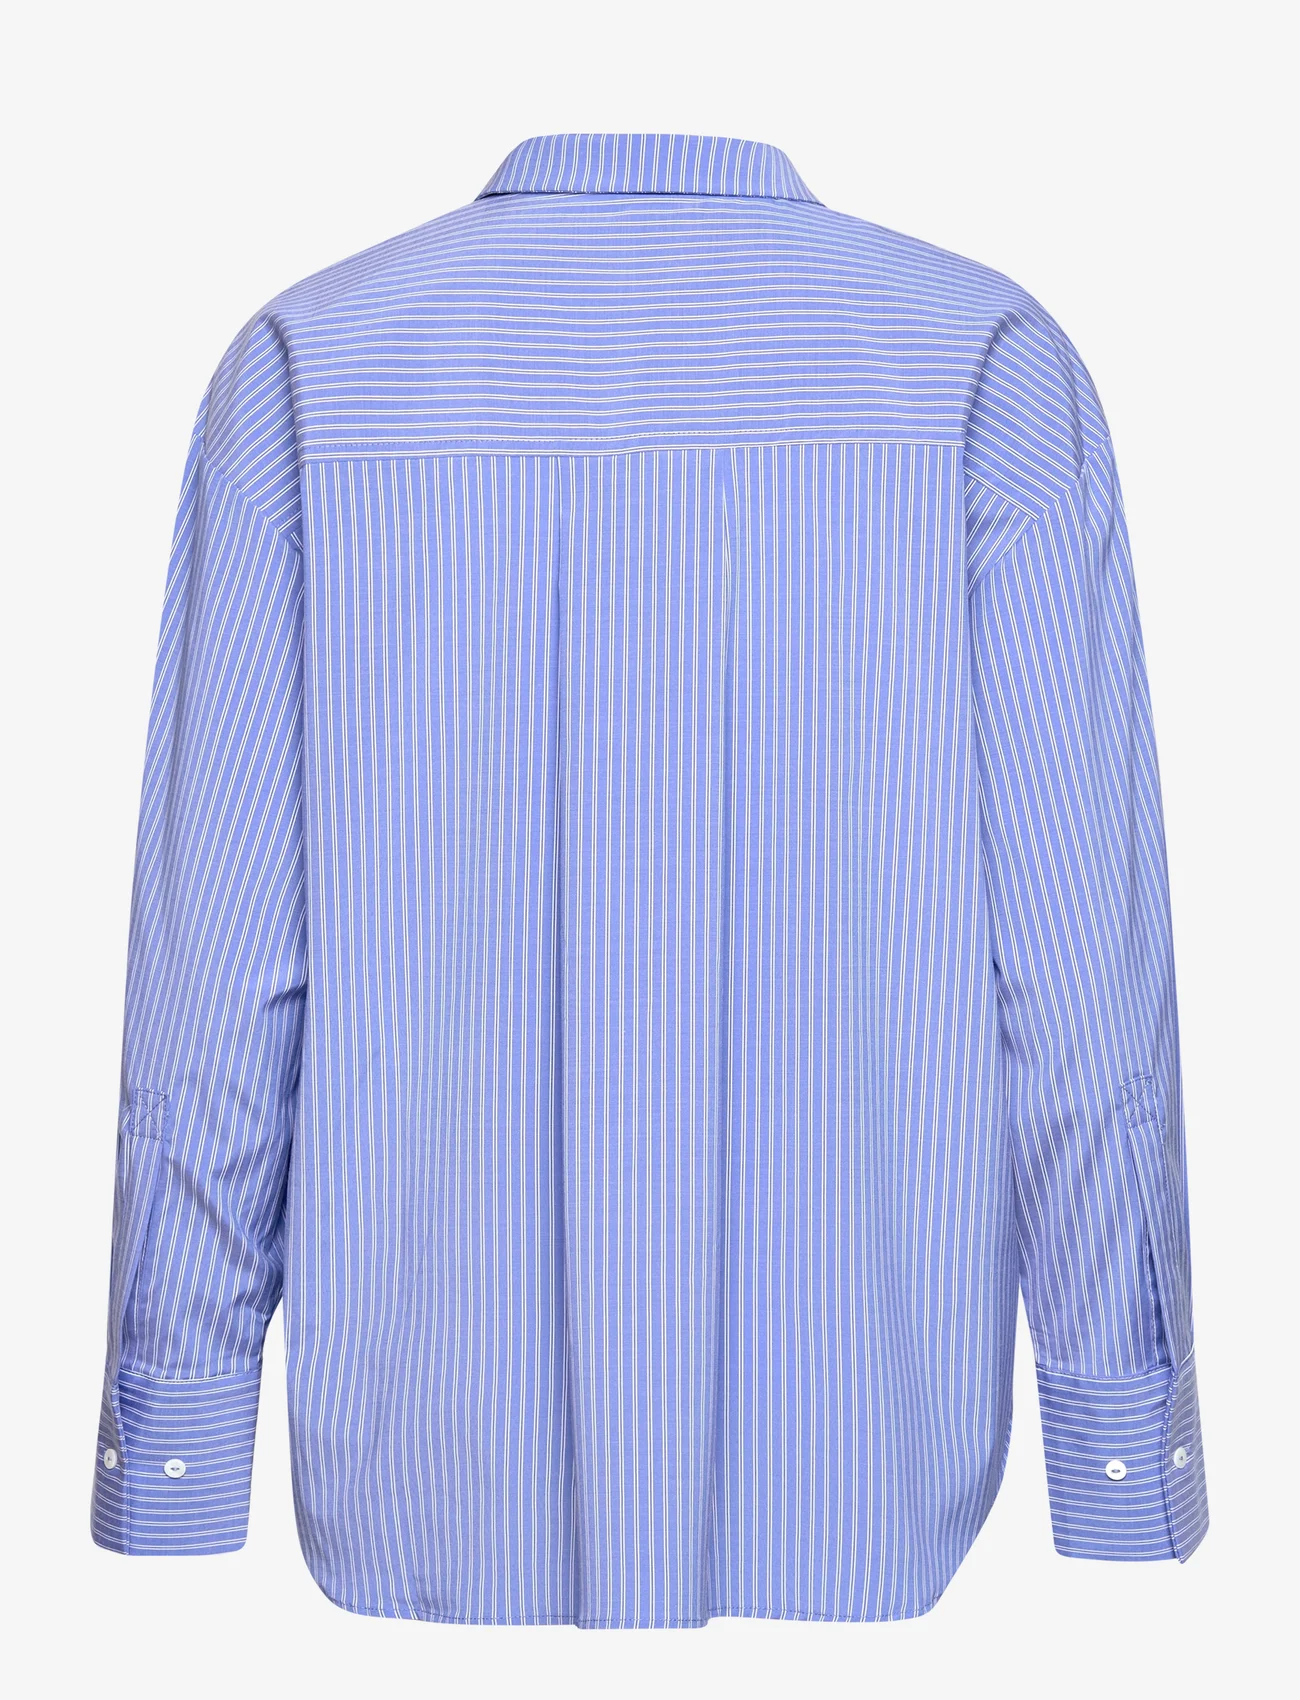 Sofie Schnoor - Shirt - marškiniai ilgomis rankovėmis - blue striped - 1